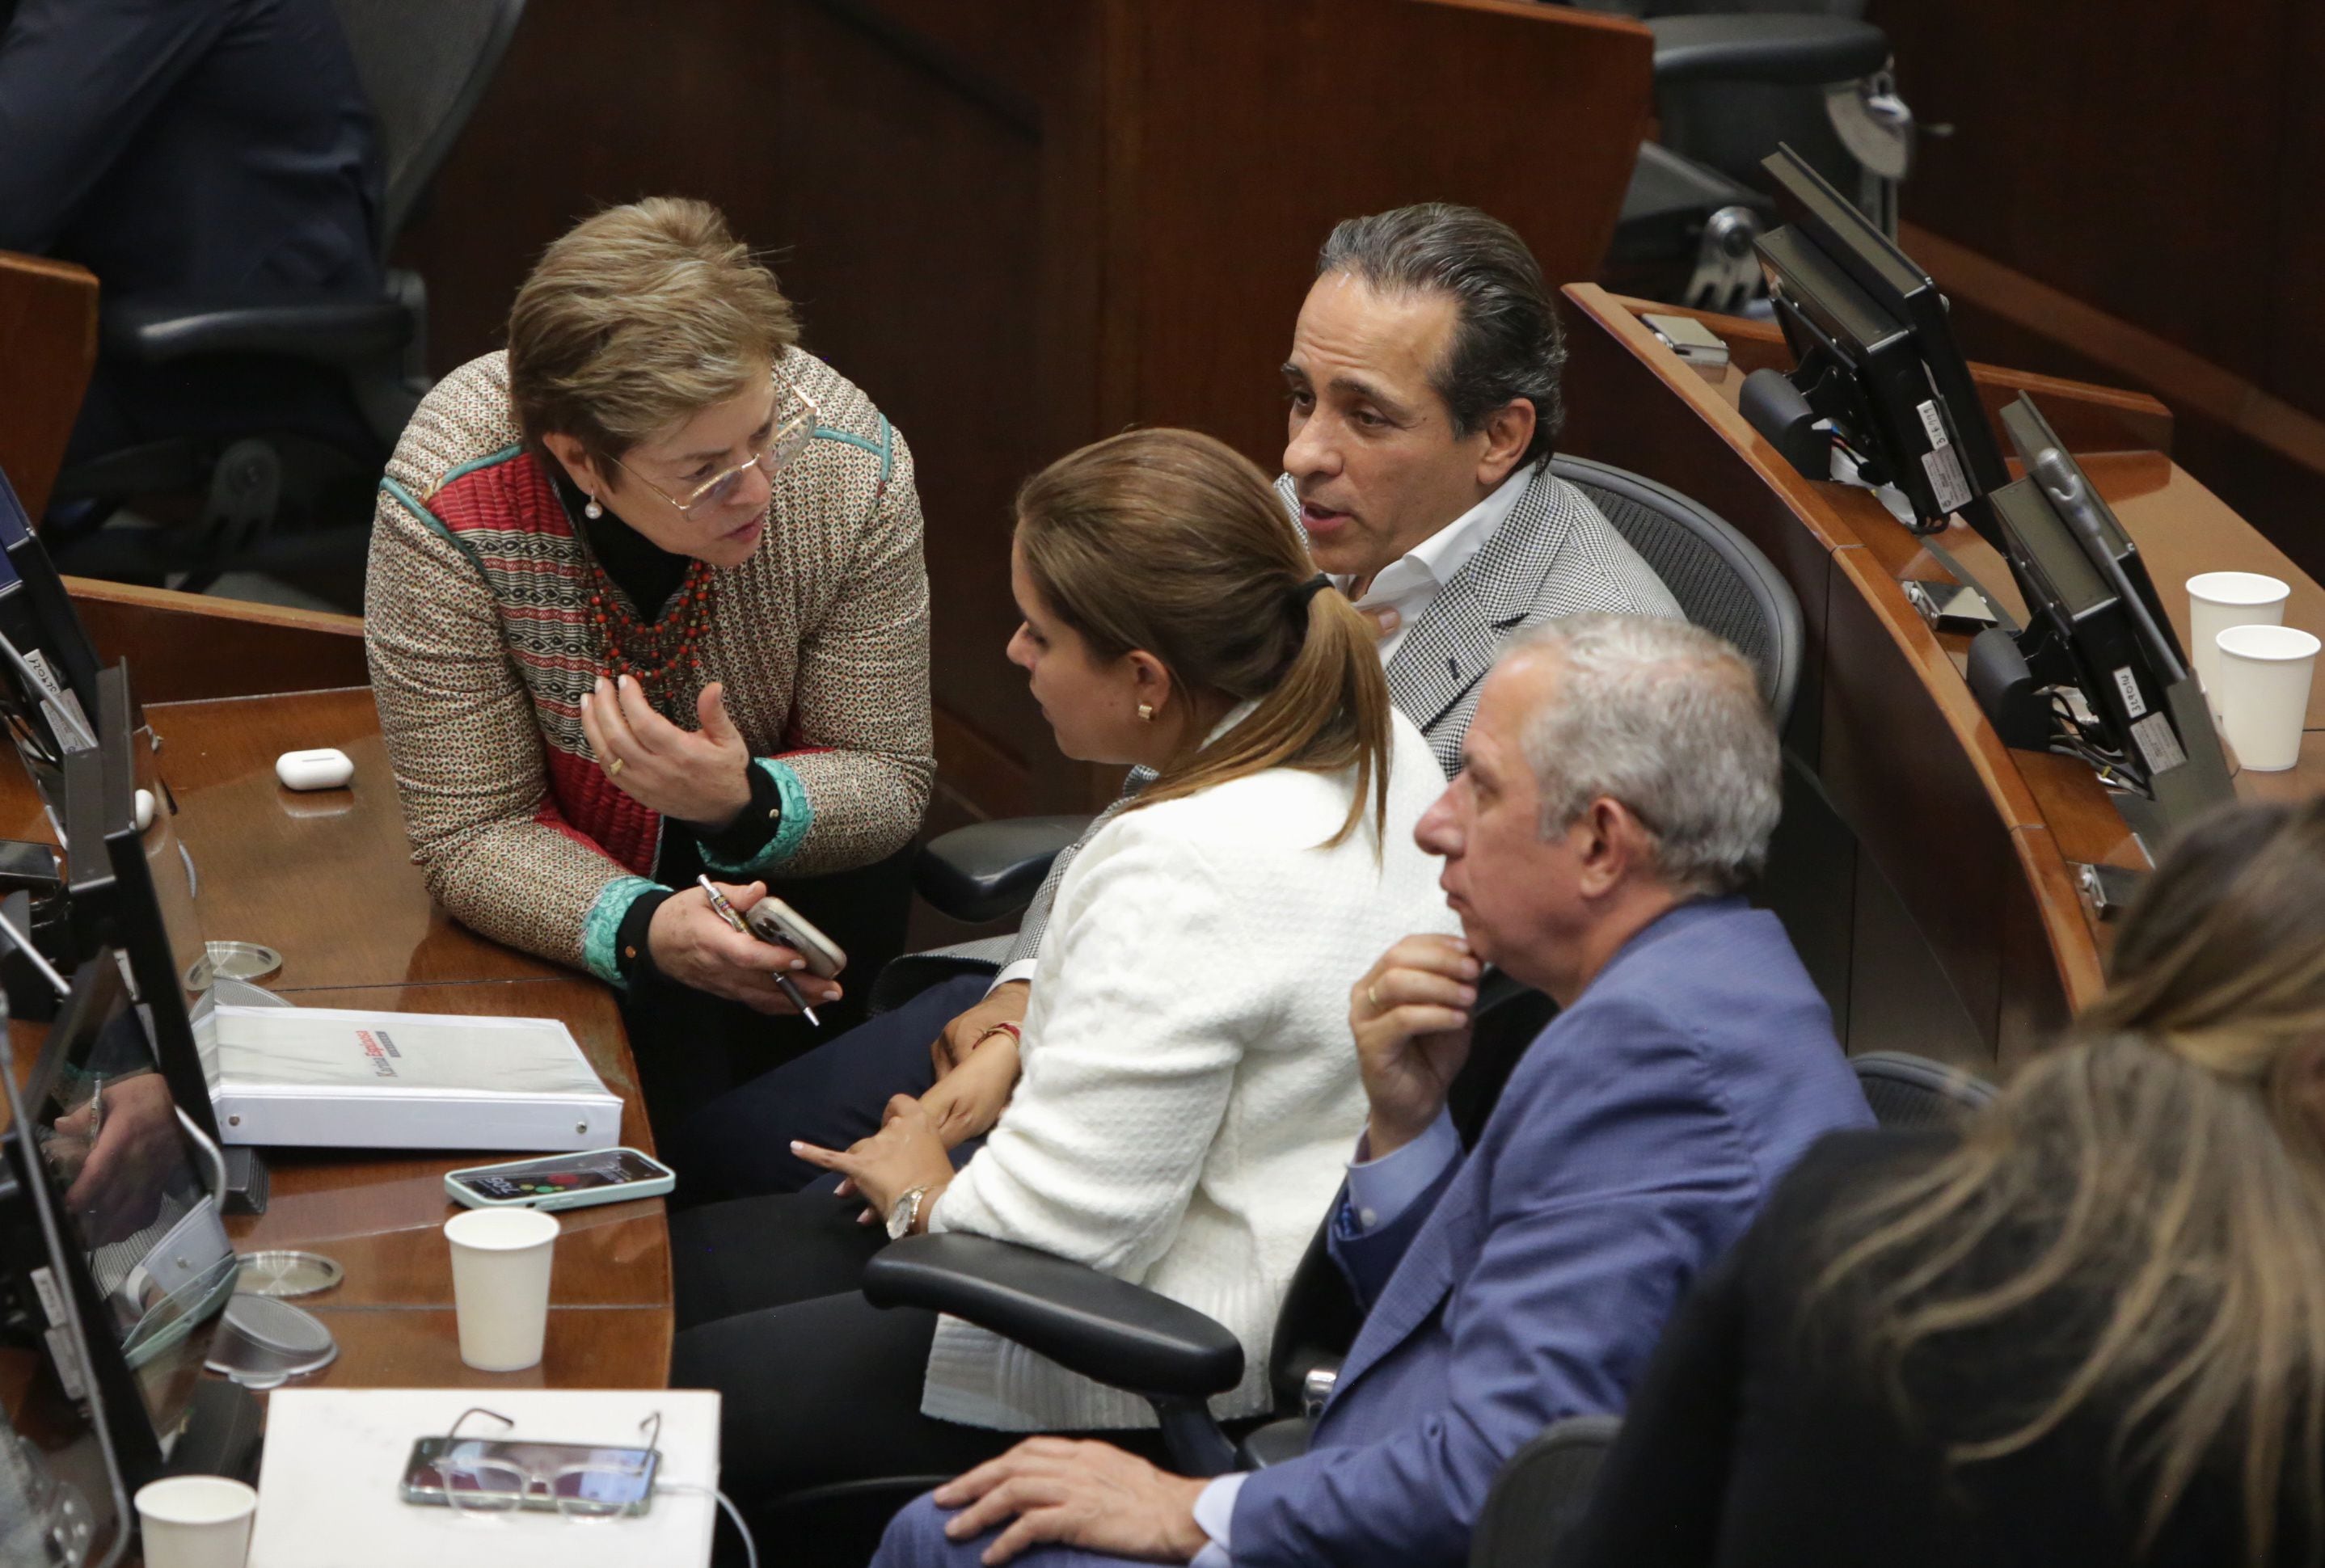 plenaria del senado aprueba la reforma pensional de petro. ¿qué pasará con los ahorros de los colombianos?